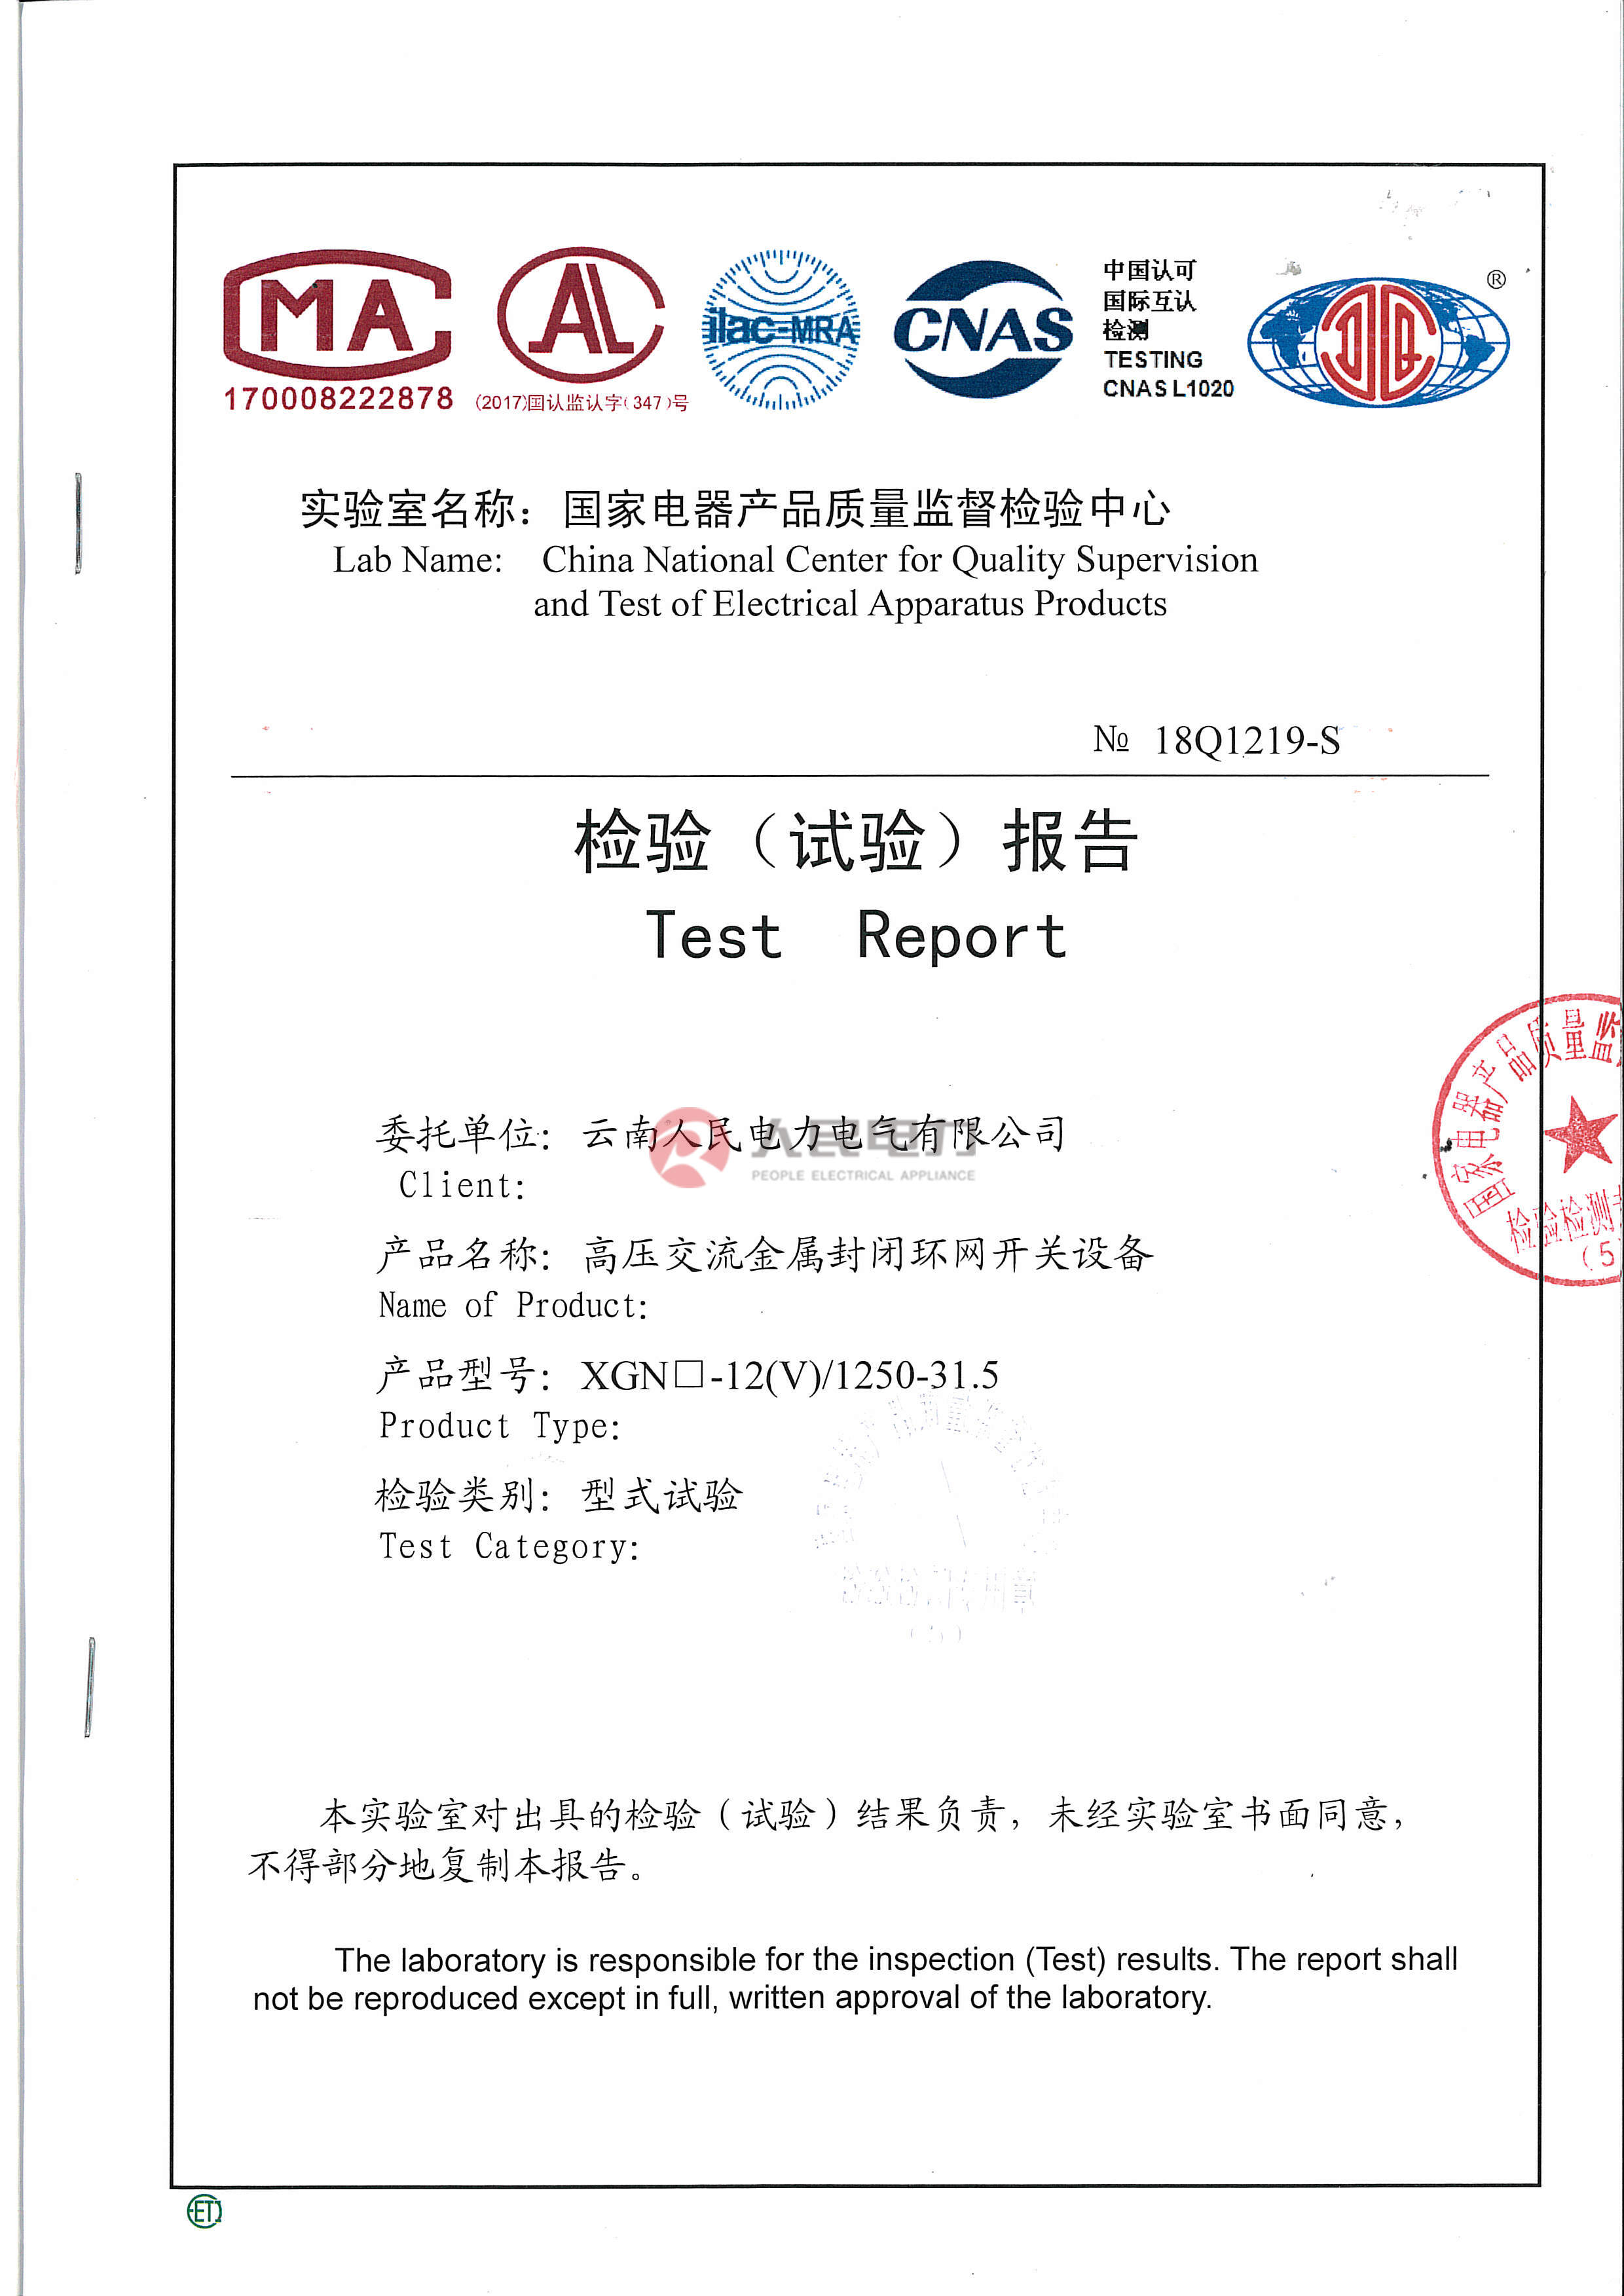 XGN  -12(V)-1250-31.5      箱型固定式交流金属环网开关设备（额定电流：1250A）试验报告